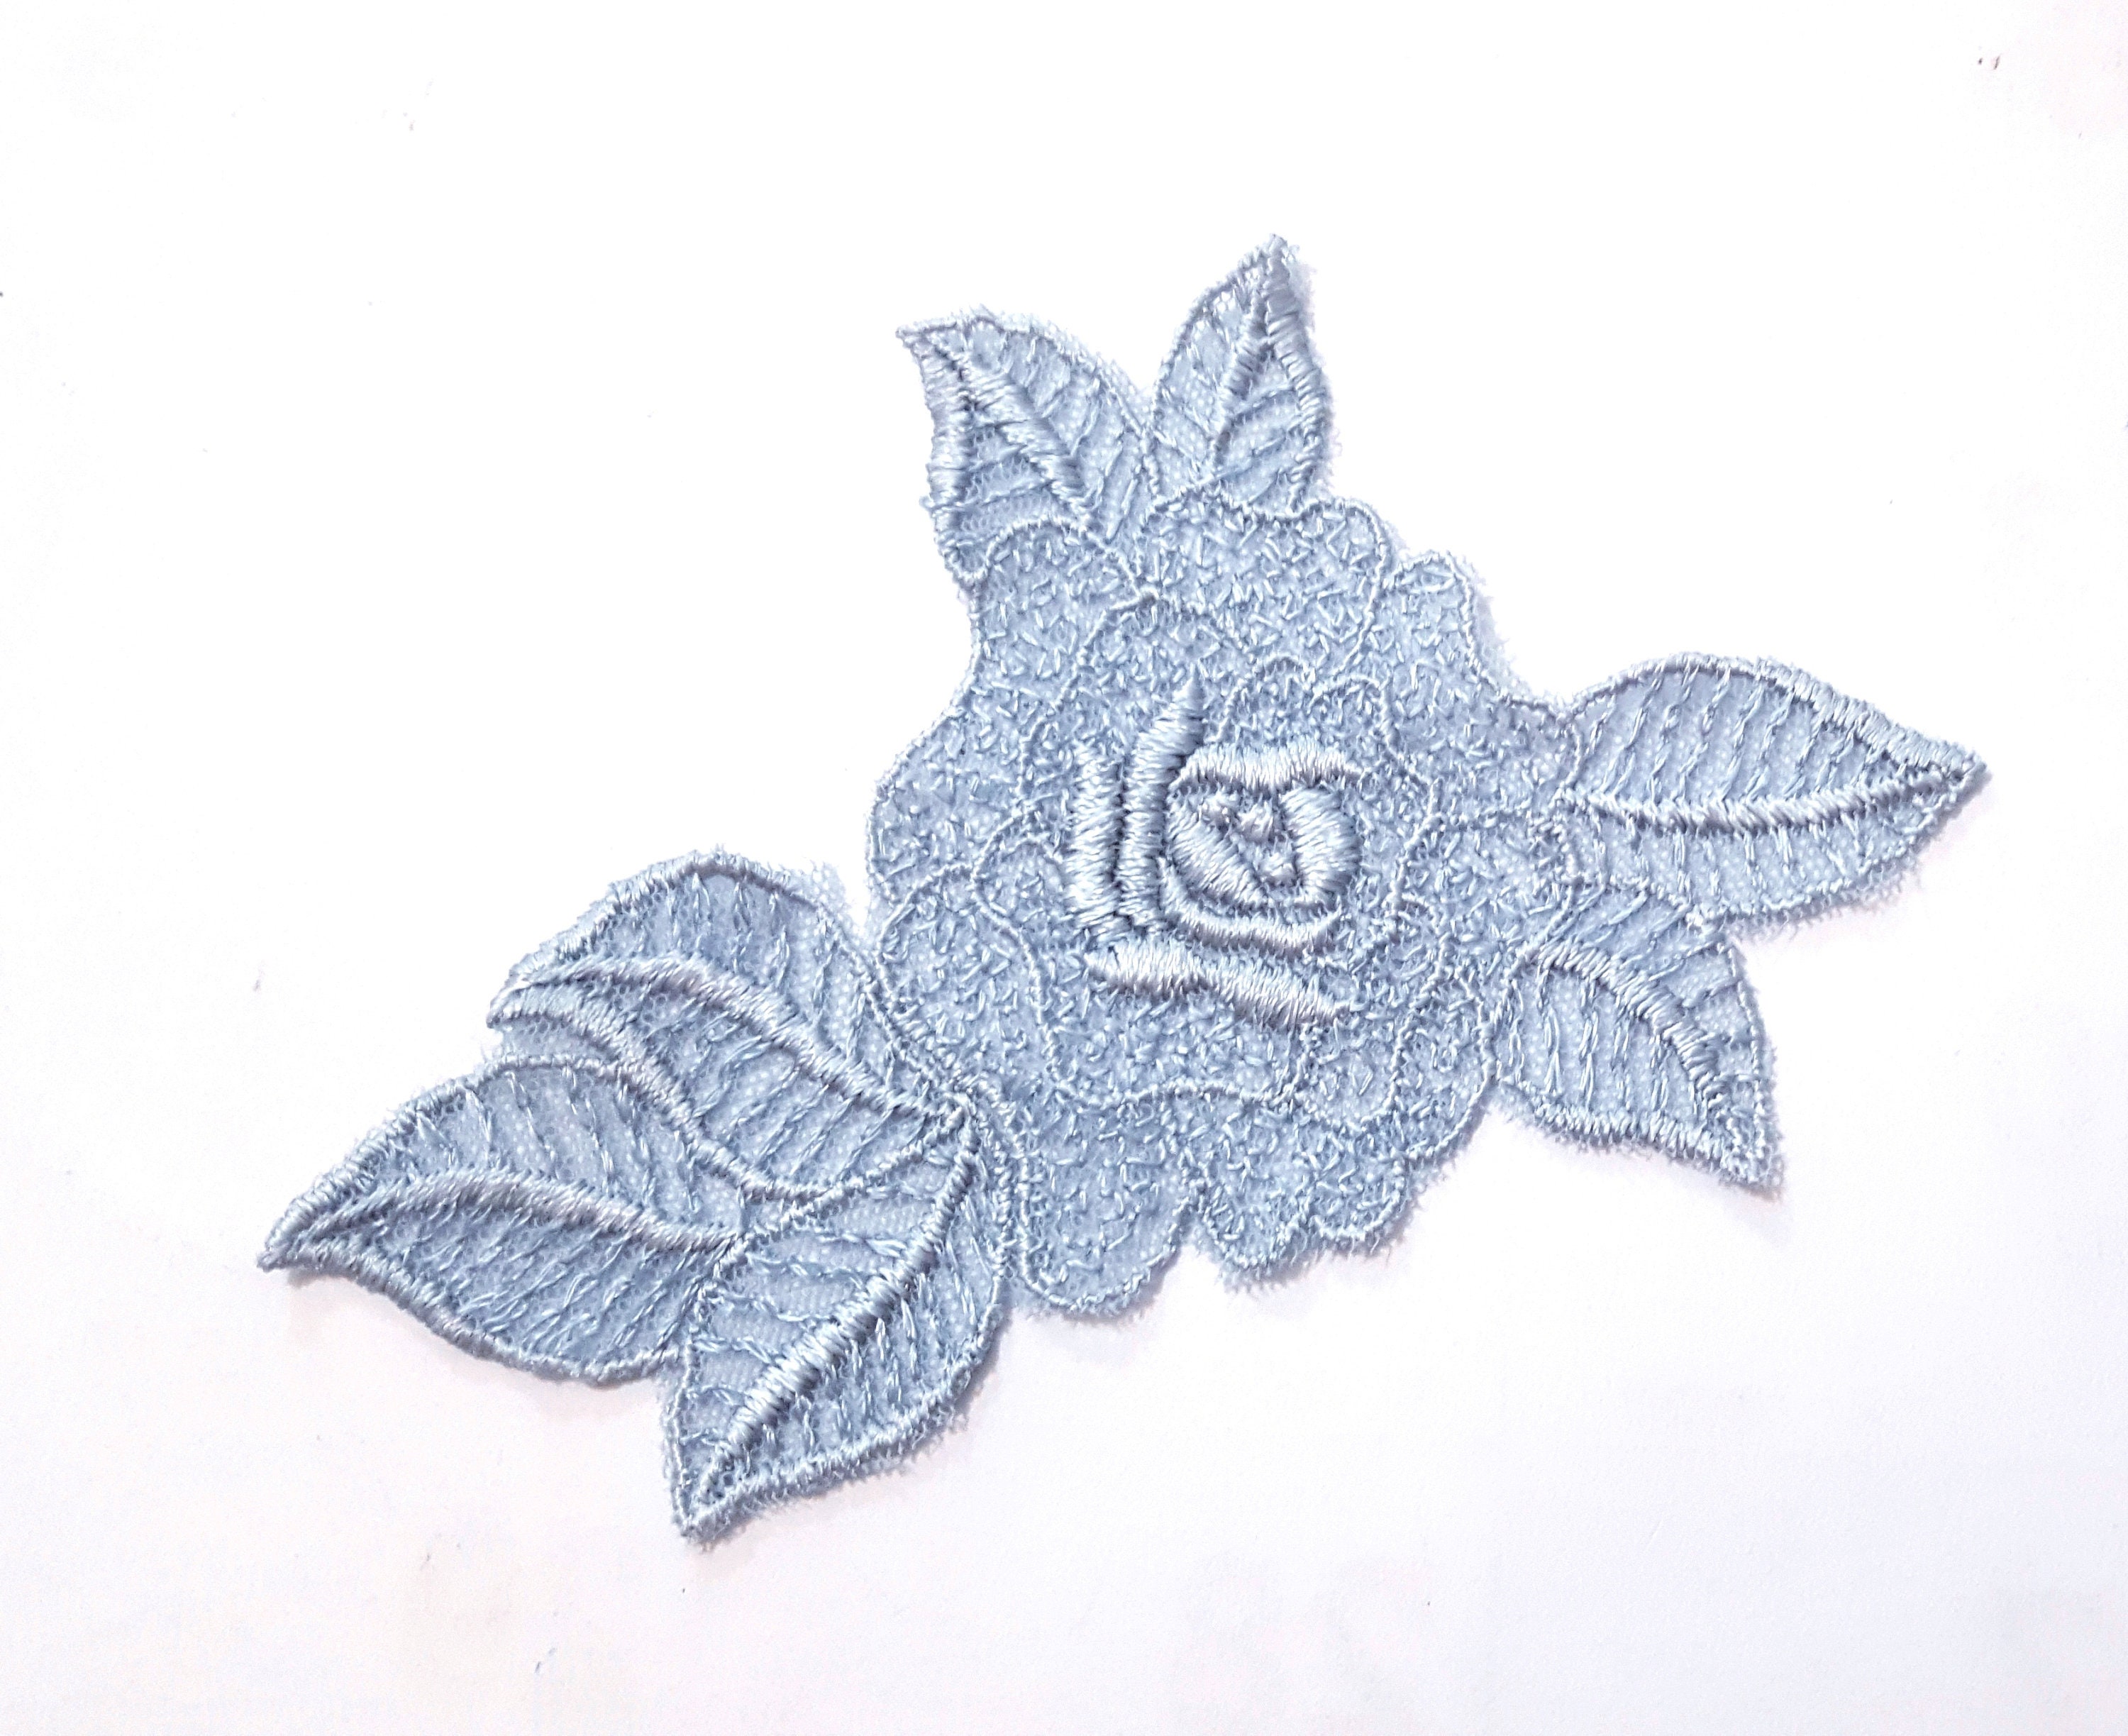  Wnvivi 2pcs Flower Patches,Blue Rose Pattern DIY